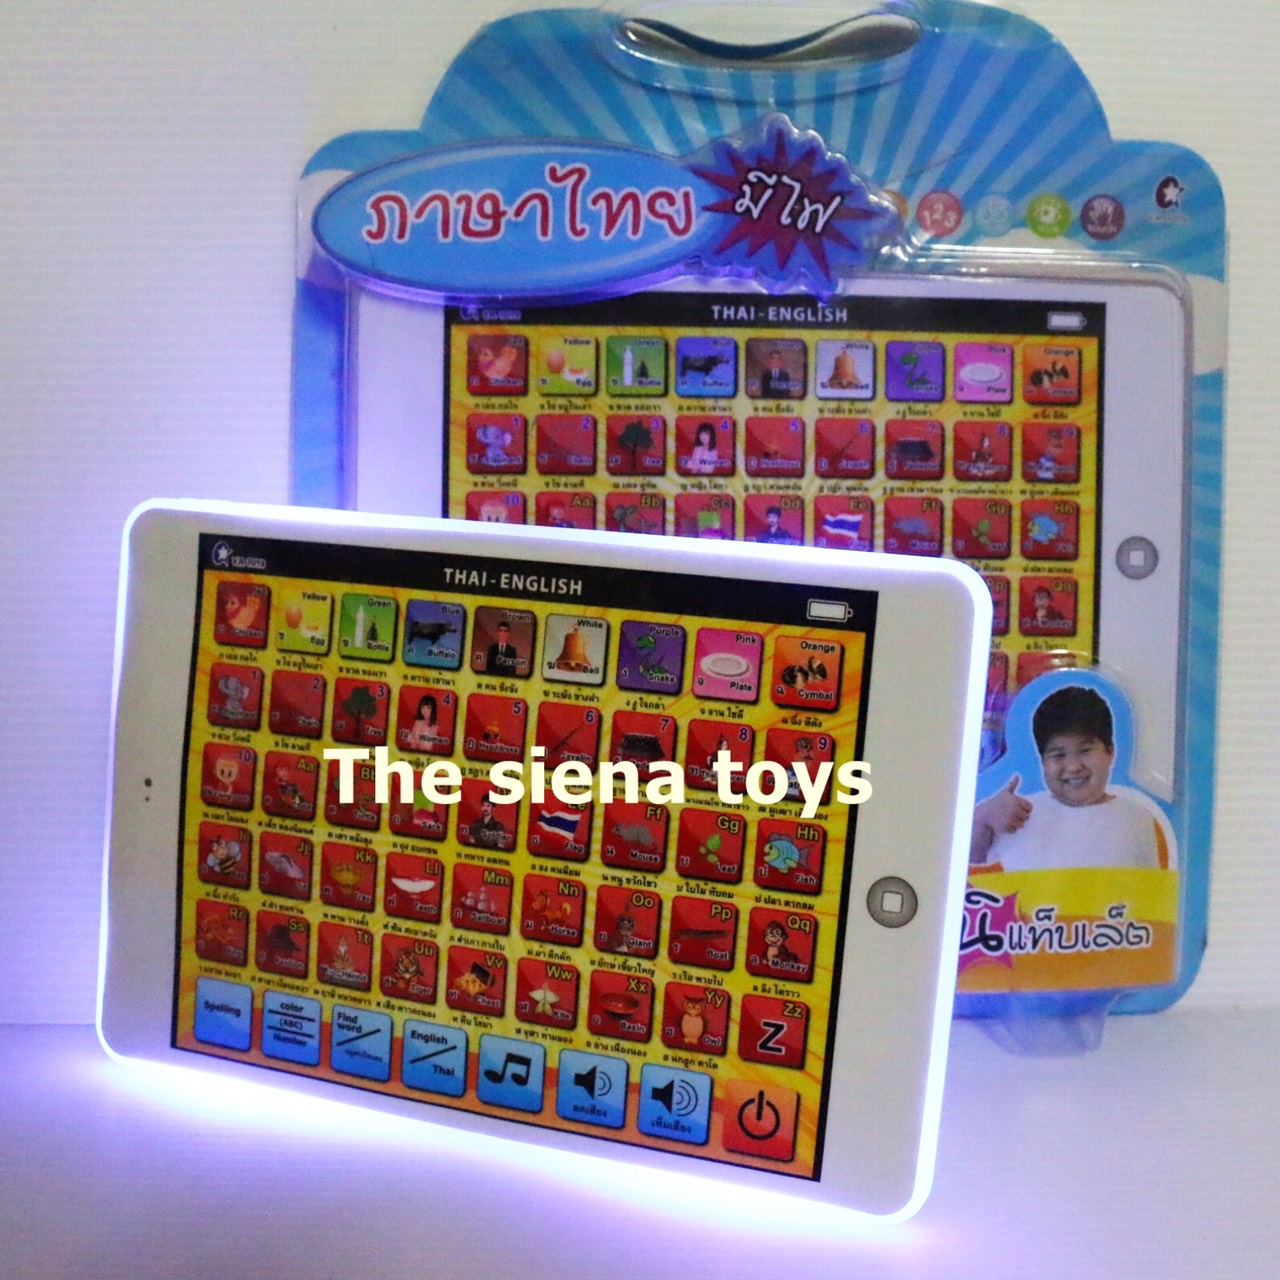 แท็บเล็ตเด็กเล่น  มีภาษาไทย ก-ฮ และภาษาอังกฤ A-Z สอนตัวเลข และสี  (สินค้าถ่ายจากของจริง / เชคของก่อนส่งทุกชิ้น)